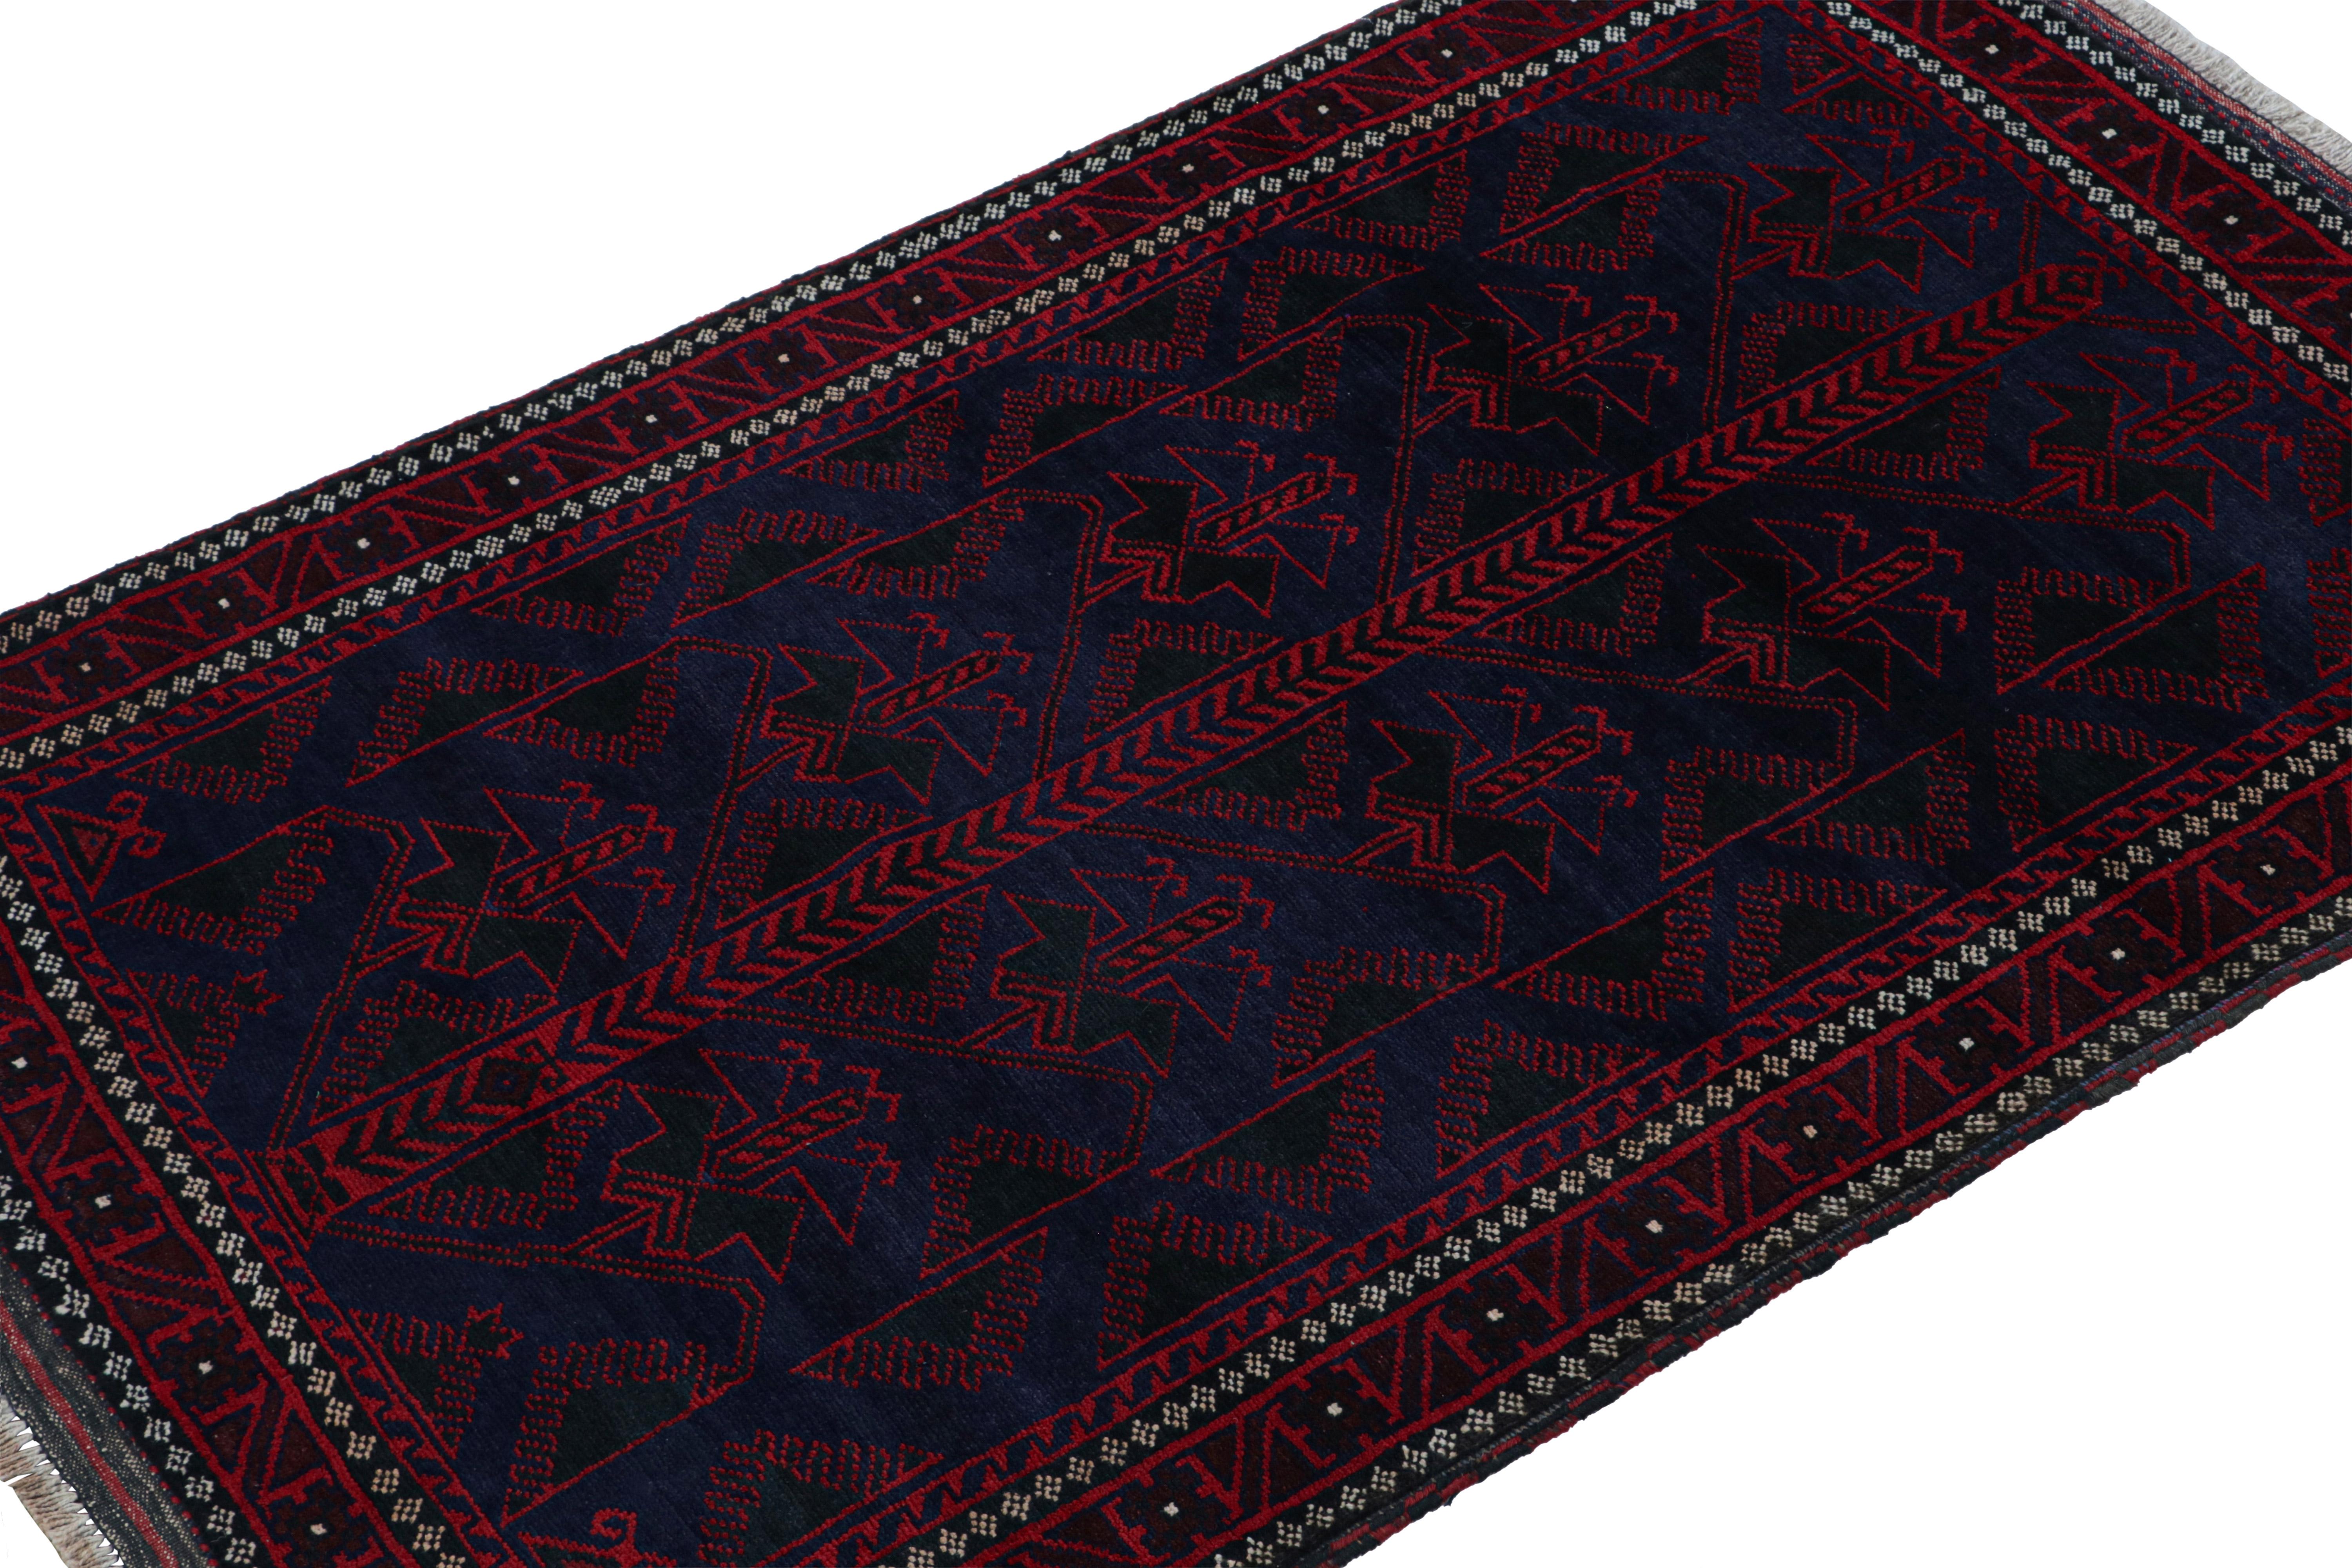 Dieser handgeknüpfte Teppich aus Wolle und Ziegenhaar (ca. 1950-1960) in der Größe 4x6 ist eine Neuheit von Rug & Kilim. 

Über das Design: 

Dieser Läufer besticht durch geometrische Muster in satten Rot- und Marineblautönen. Aufmerksame Augen